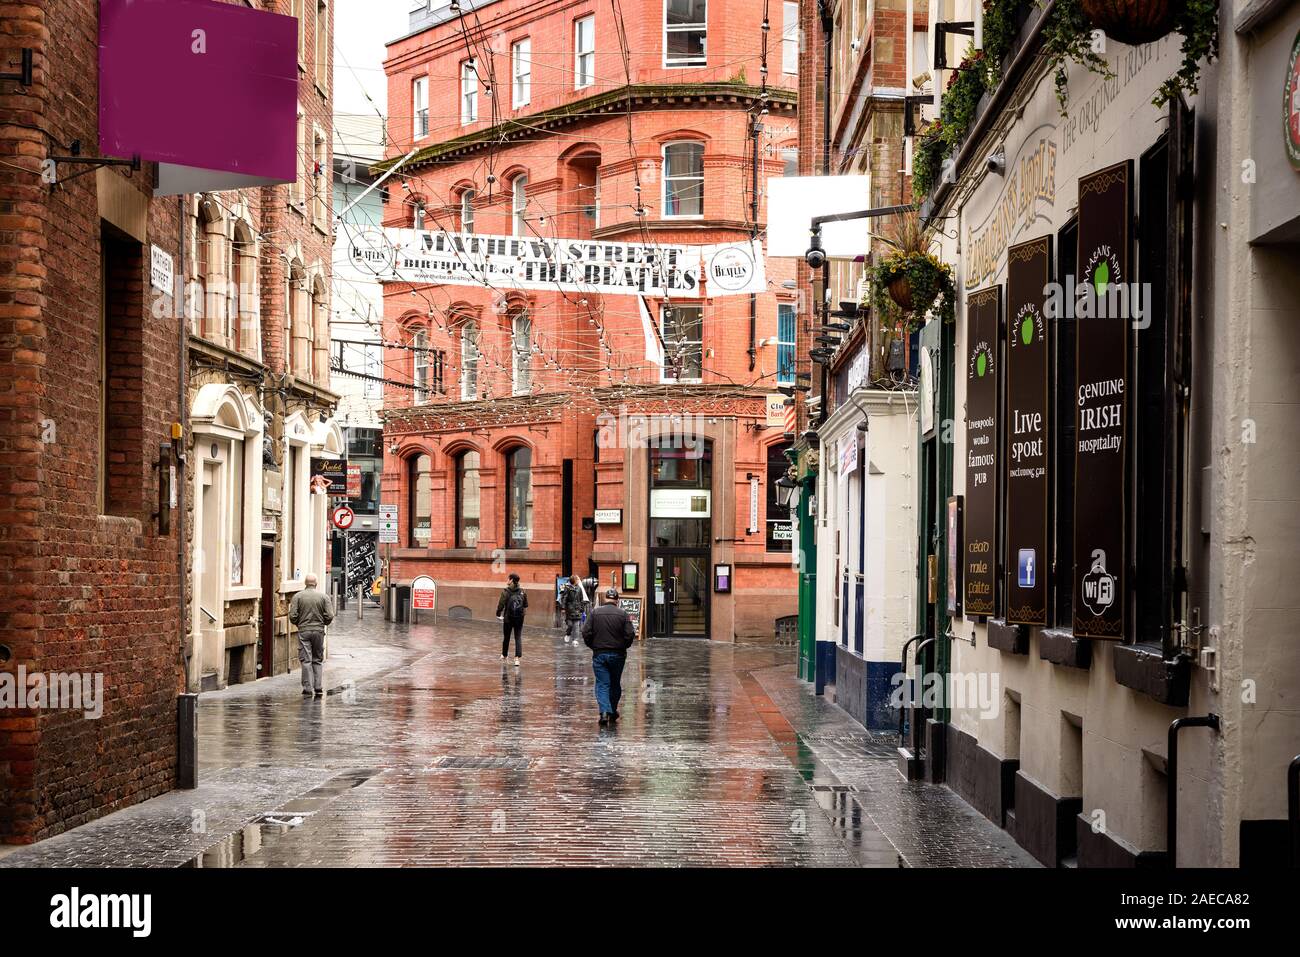 LIVERPOOL, Inglaterra-May 10th, 2015: Mathew Street es una calle peatonal con bares, restaurantes y discotecas en Liverpool Reino Unido Foto de stock